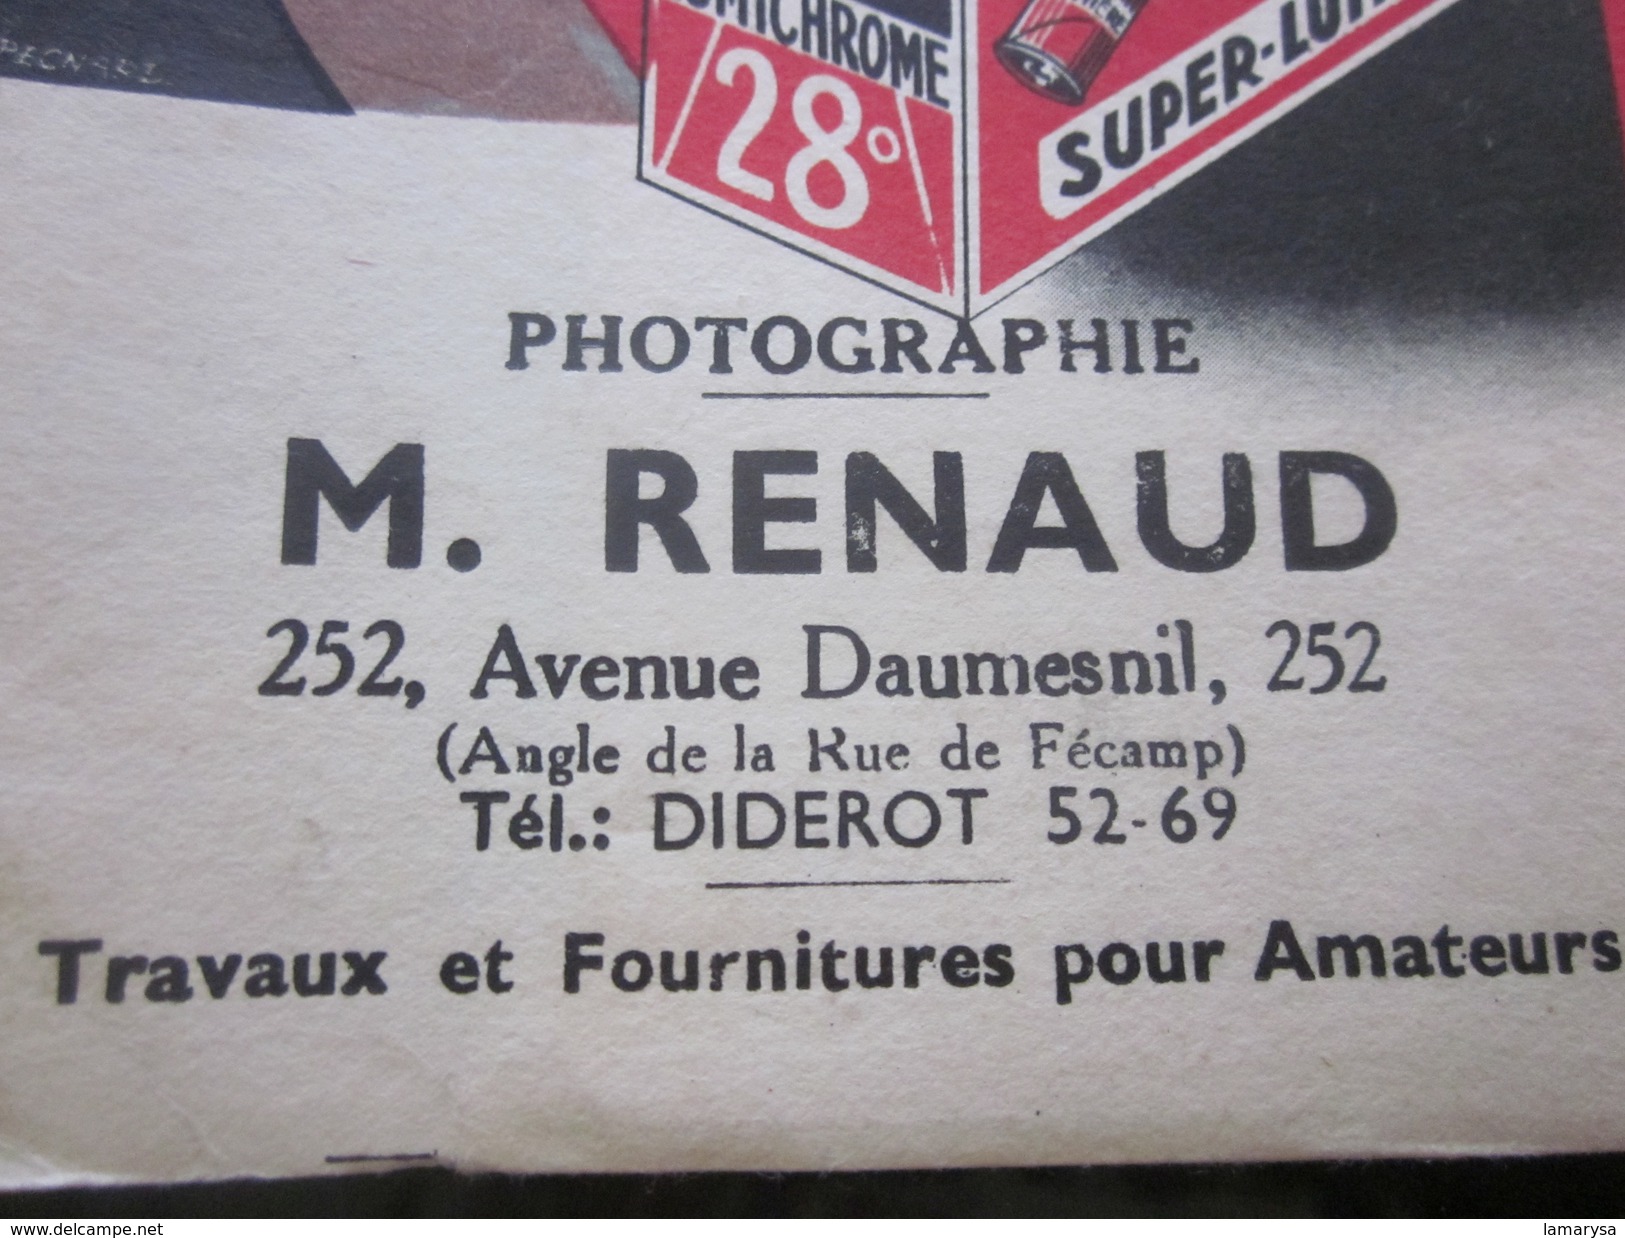 Photographie 1931 Ancienne Pochette Lumichrome"LUMIÈRE"illustrée (vide)Pour Photos Renaud Paris Matériel & Accessoires - Matériel & Accessoires